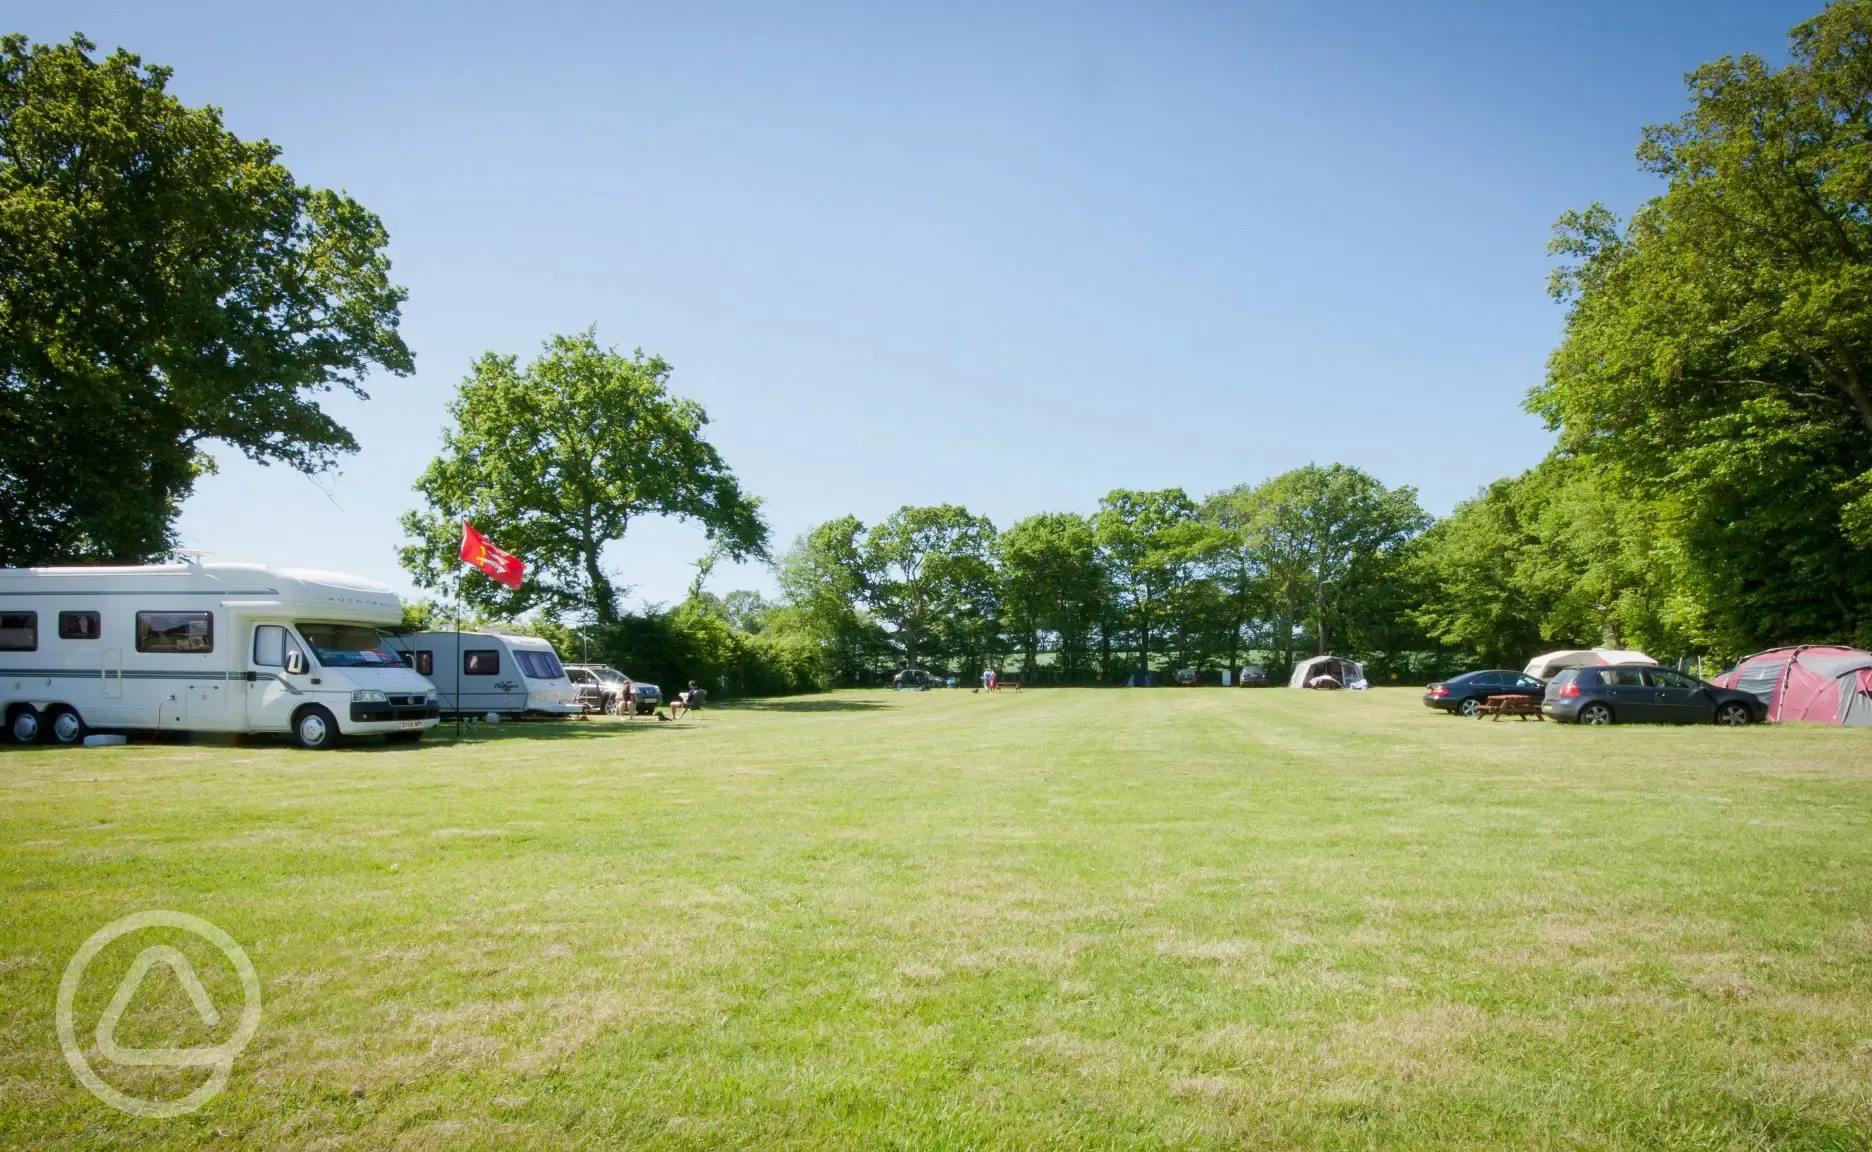 Camping and touring pitches at Broadhembury Holiday Park